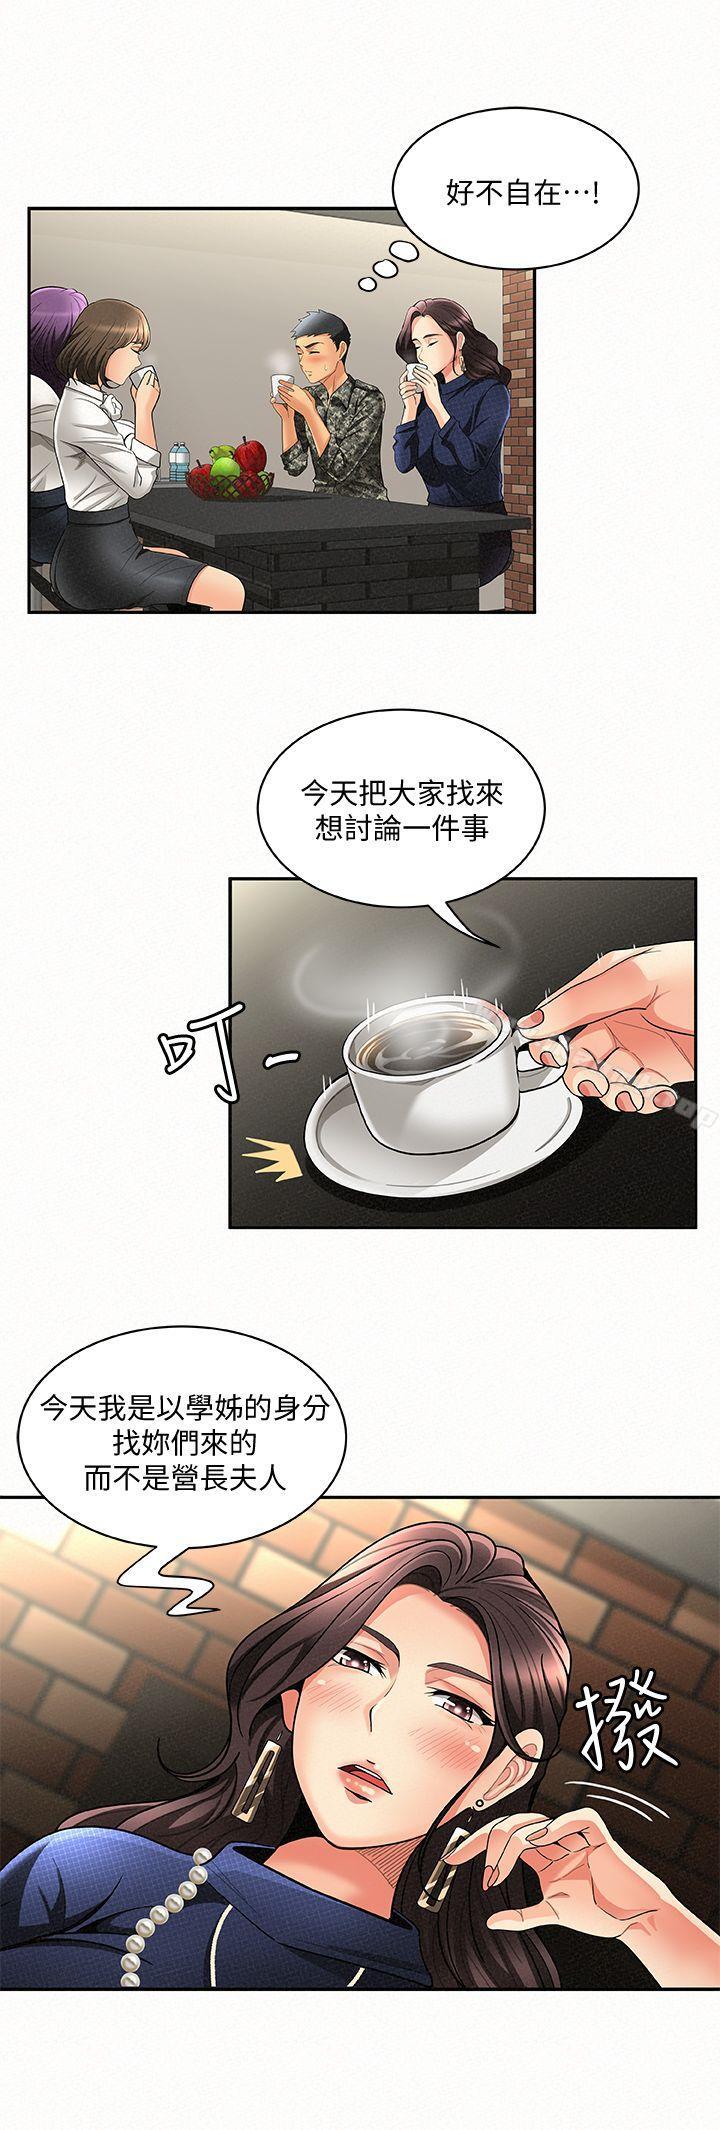 韩国漫画报告夫人韩漫_报告夫人-第3话-想不想尝尝其他有夫之妇?在线免费阅读-韩国漫画-第9张图片